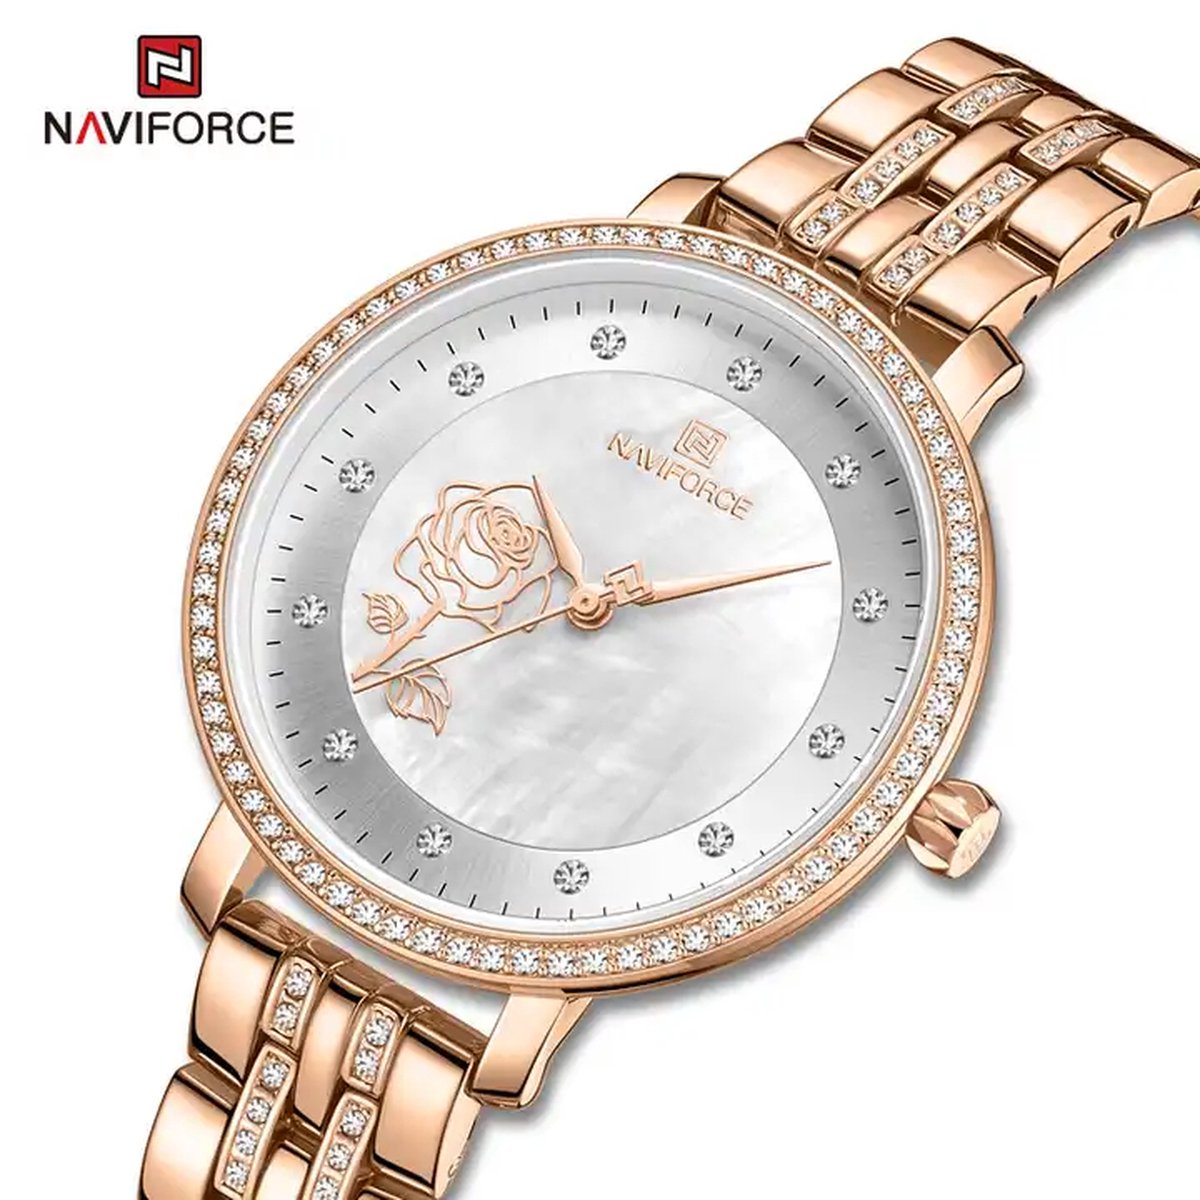 NAVIFORCE horloge met kristal diamantjes , gouden stalen polsband, witte wijzerplaat, gouden horlogekast en wijzers, voor dames met stijl ( model 5017 RGW )